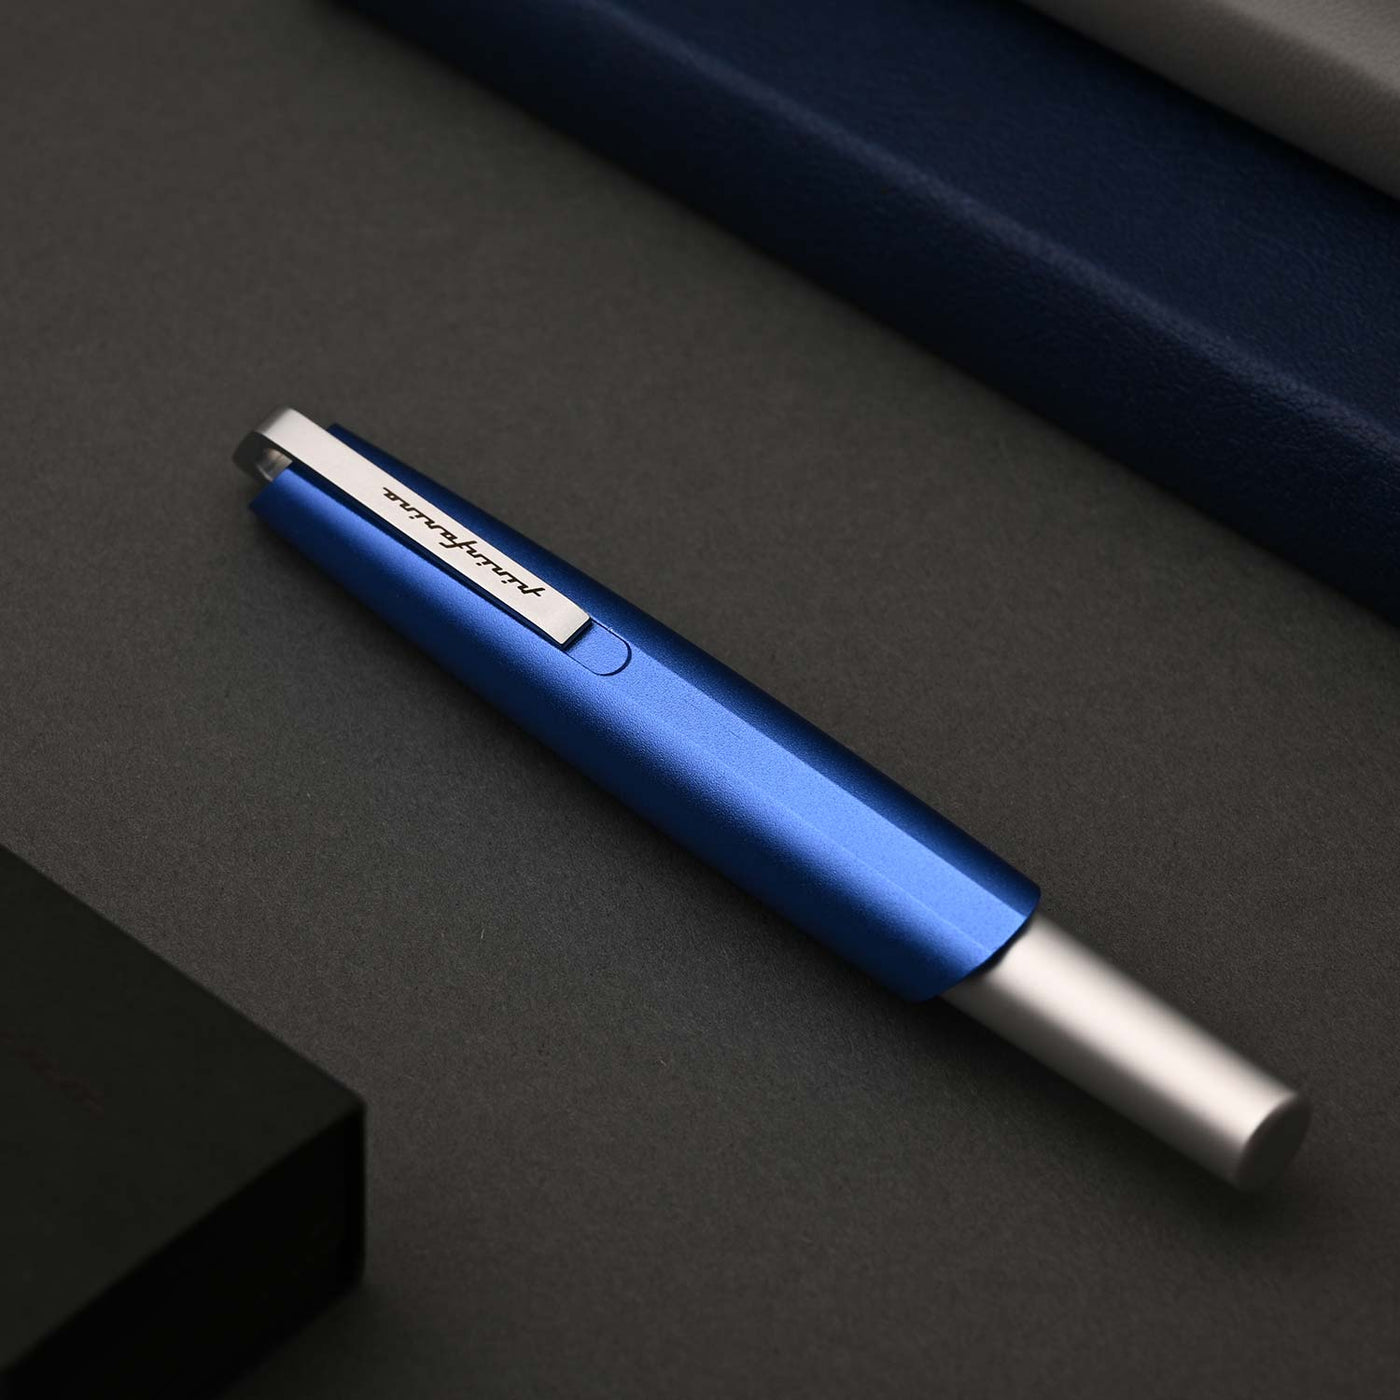 Pininfarina Segno PF Go Fountain Pen - Blue